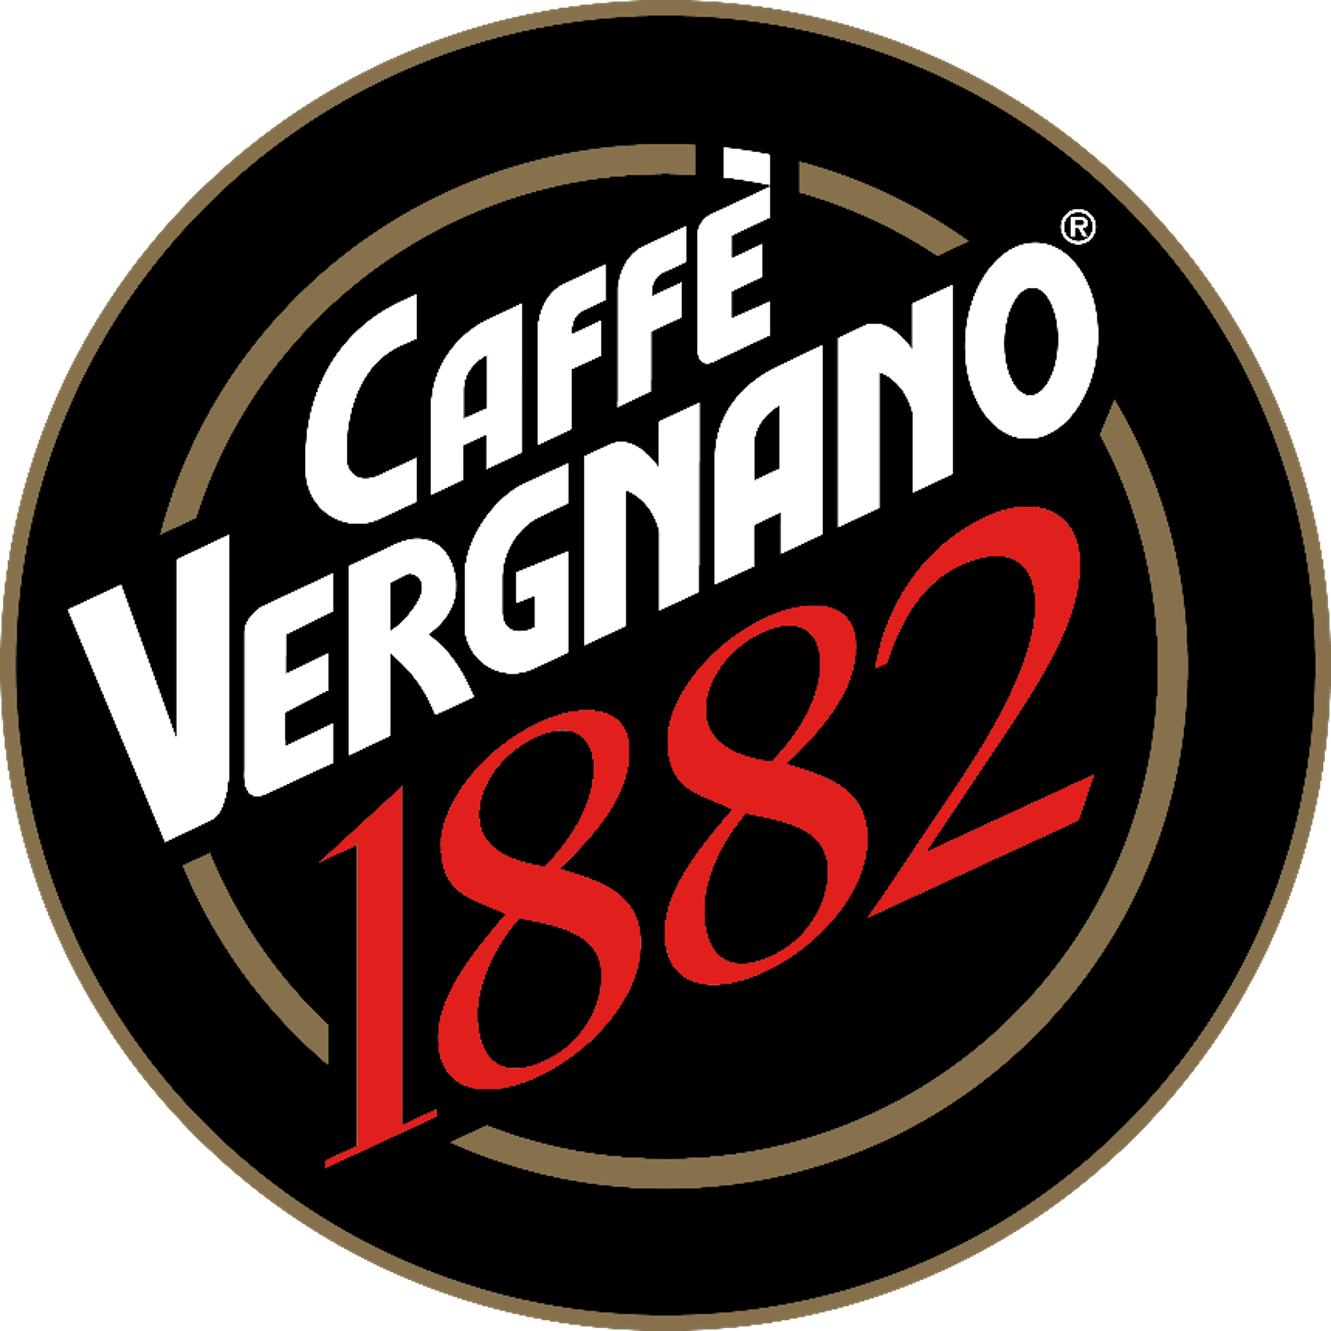 caffee_vergnano_logo